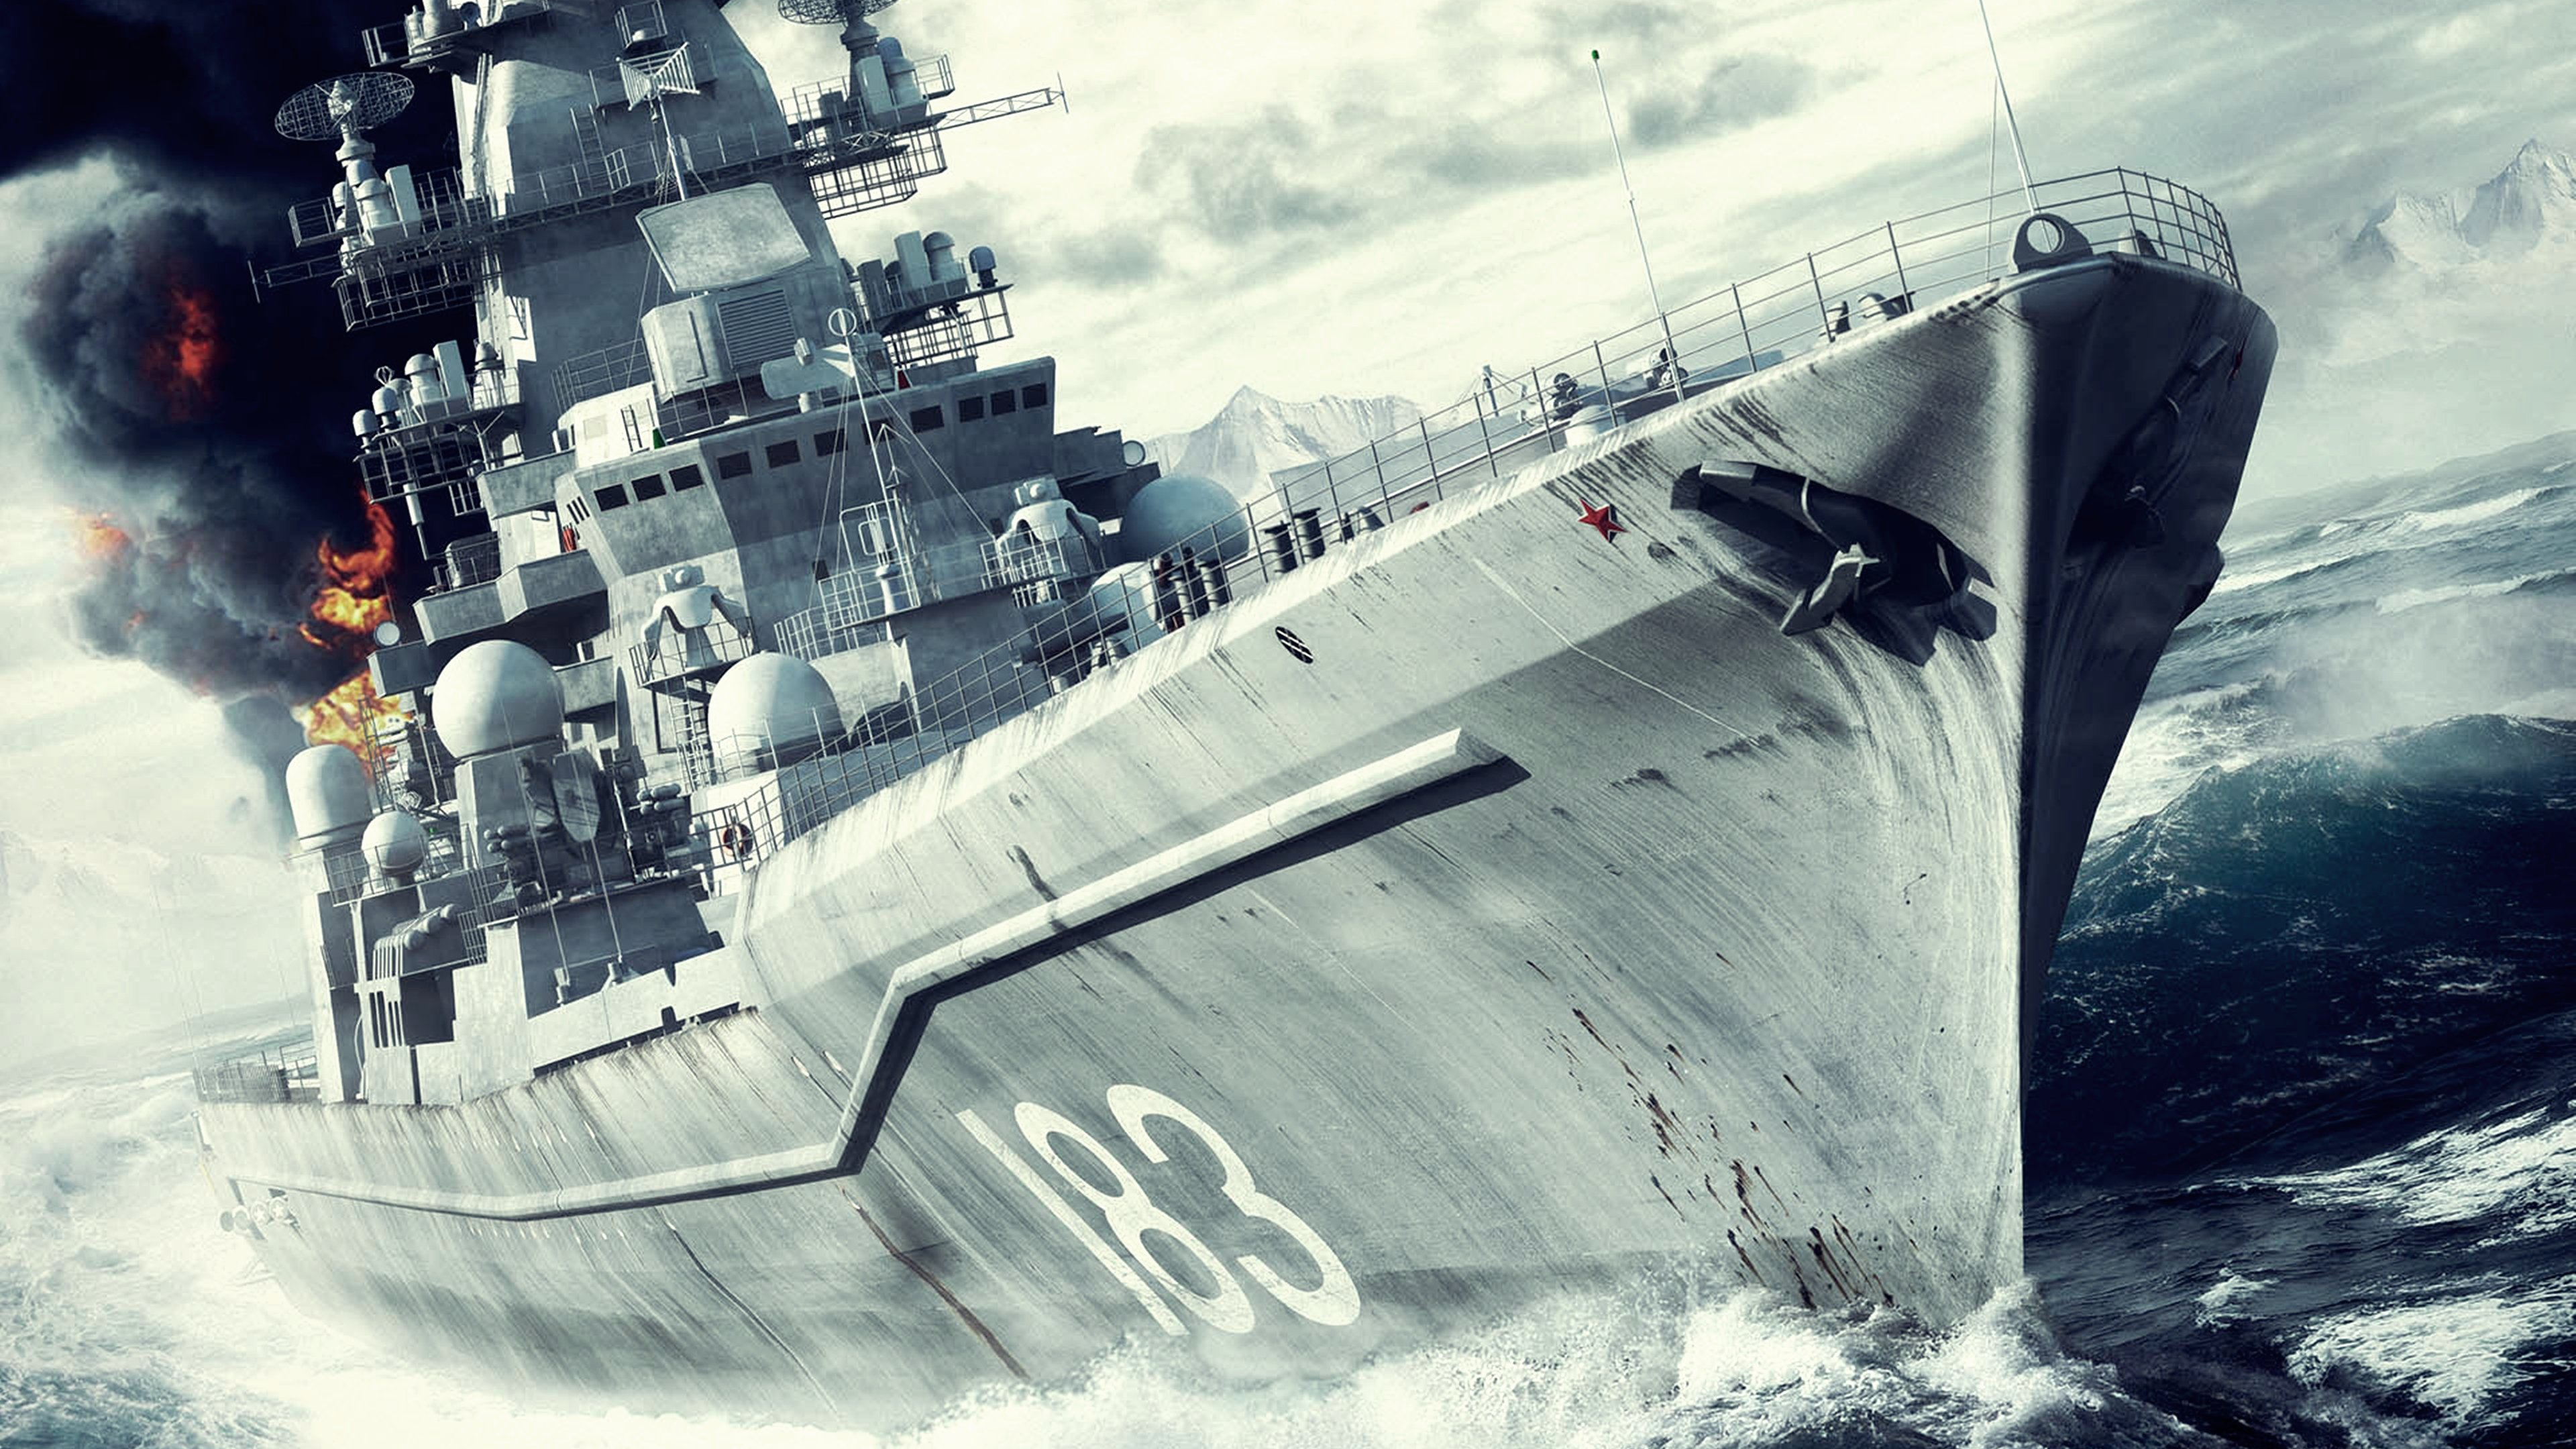 战舰, 海军的船, 军舰, 战列巡洋舰, 驱逐舰 壁纸 3840x2160 允许